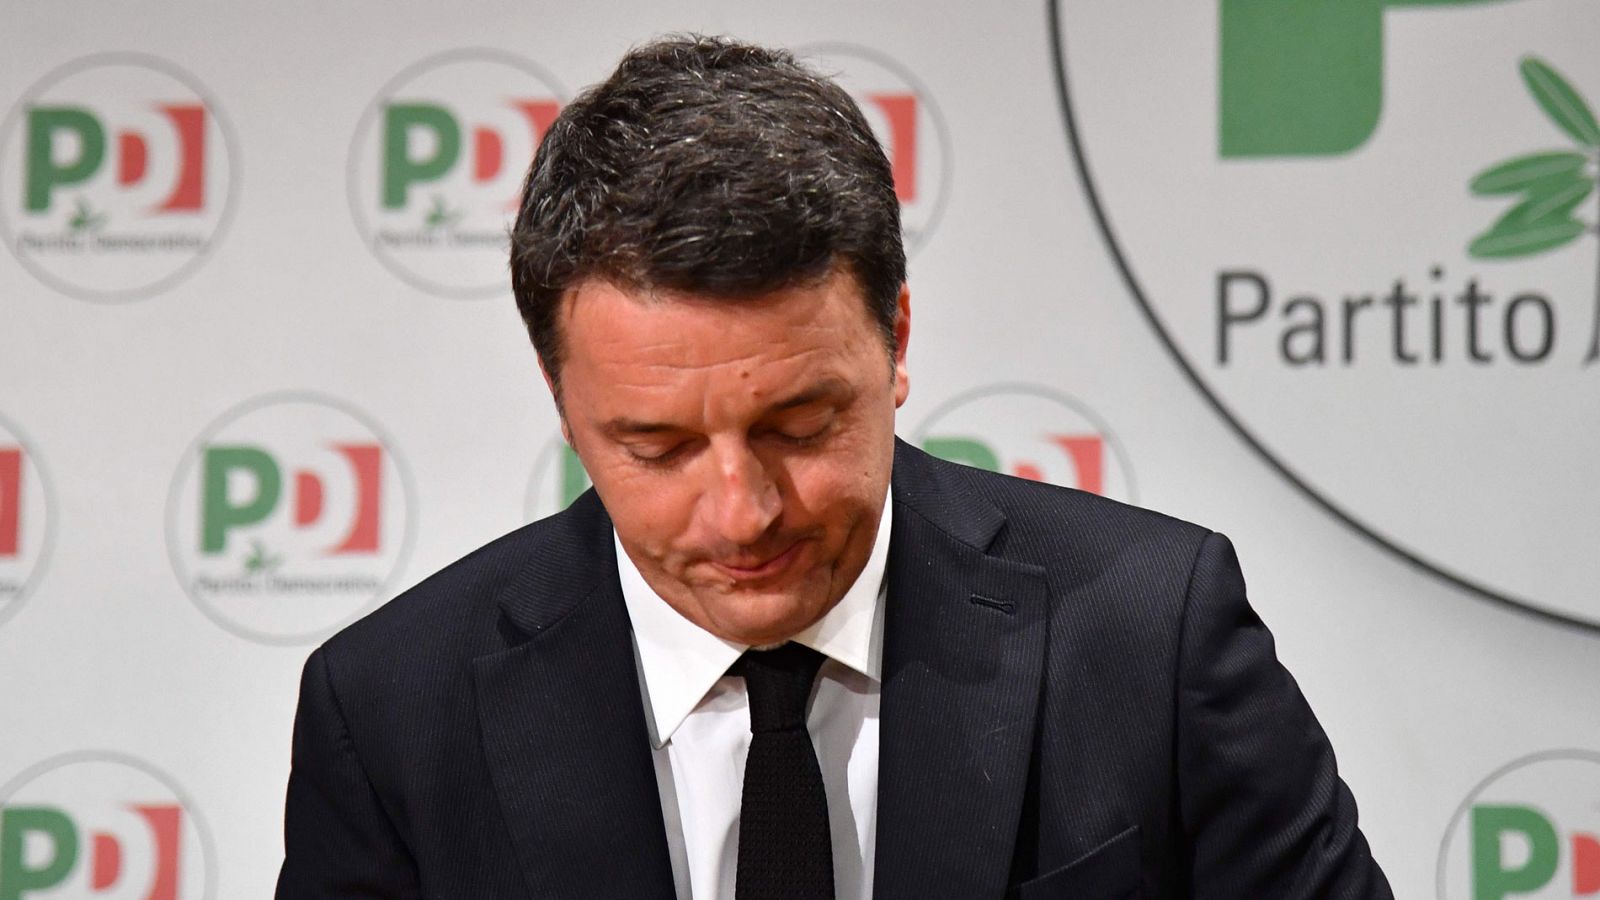 Italia: Matteo Renzi anuncia su dimisión al frente del Partido Democrático por los malos resultados en las elecciones